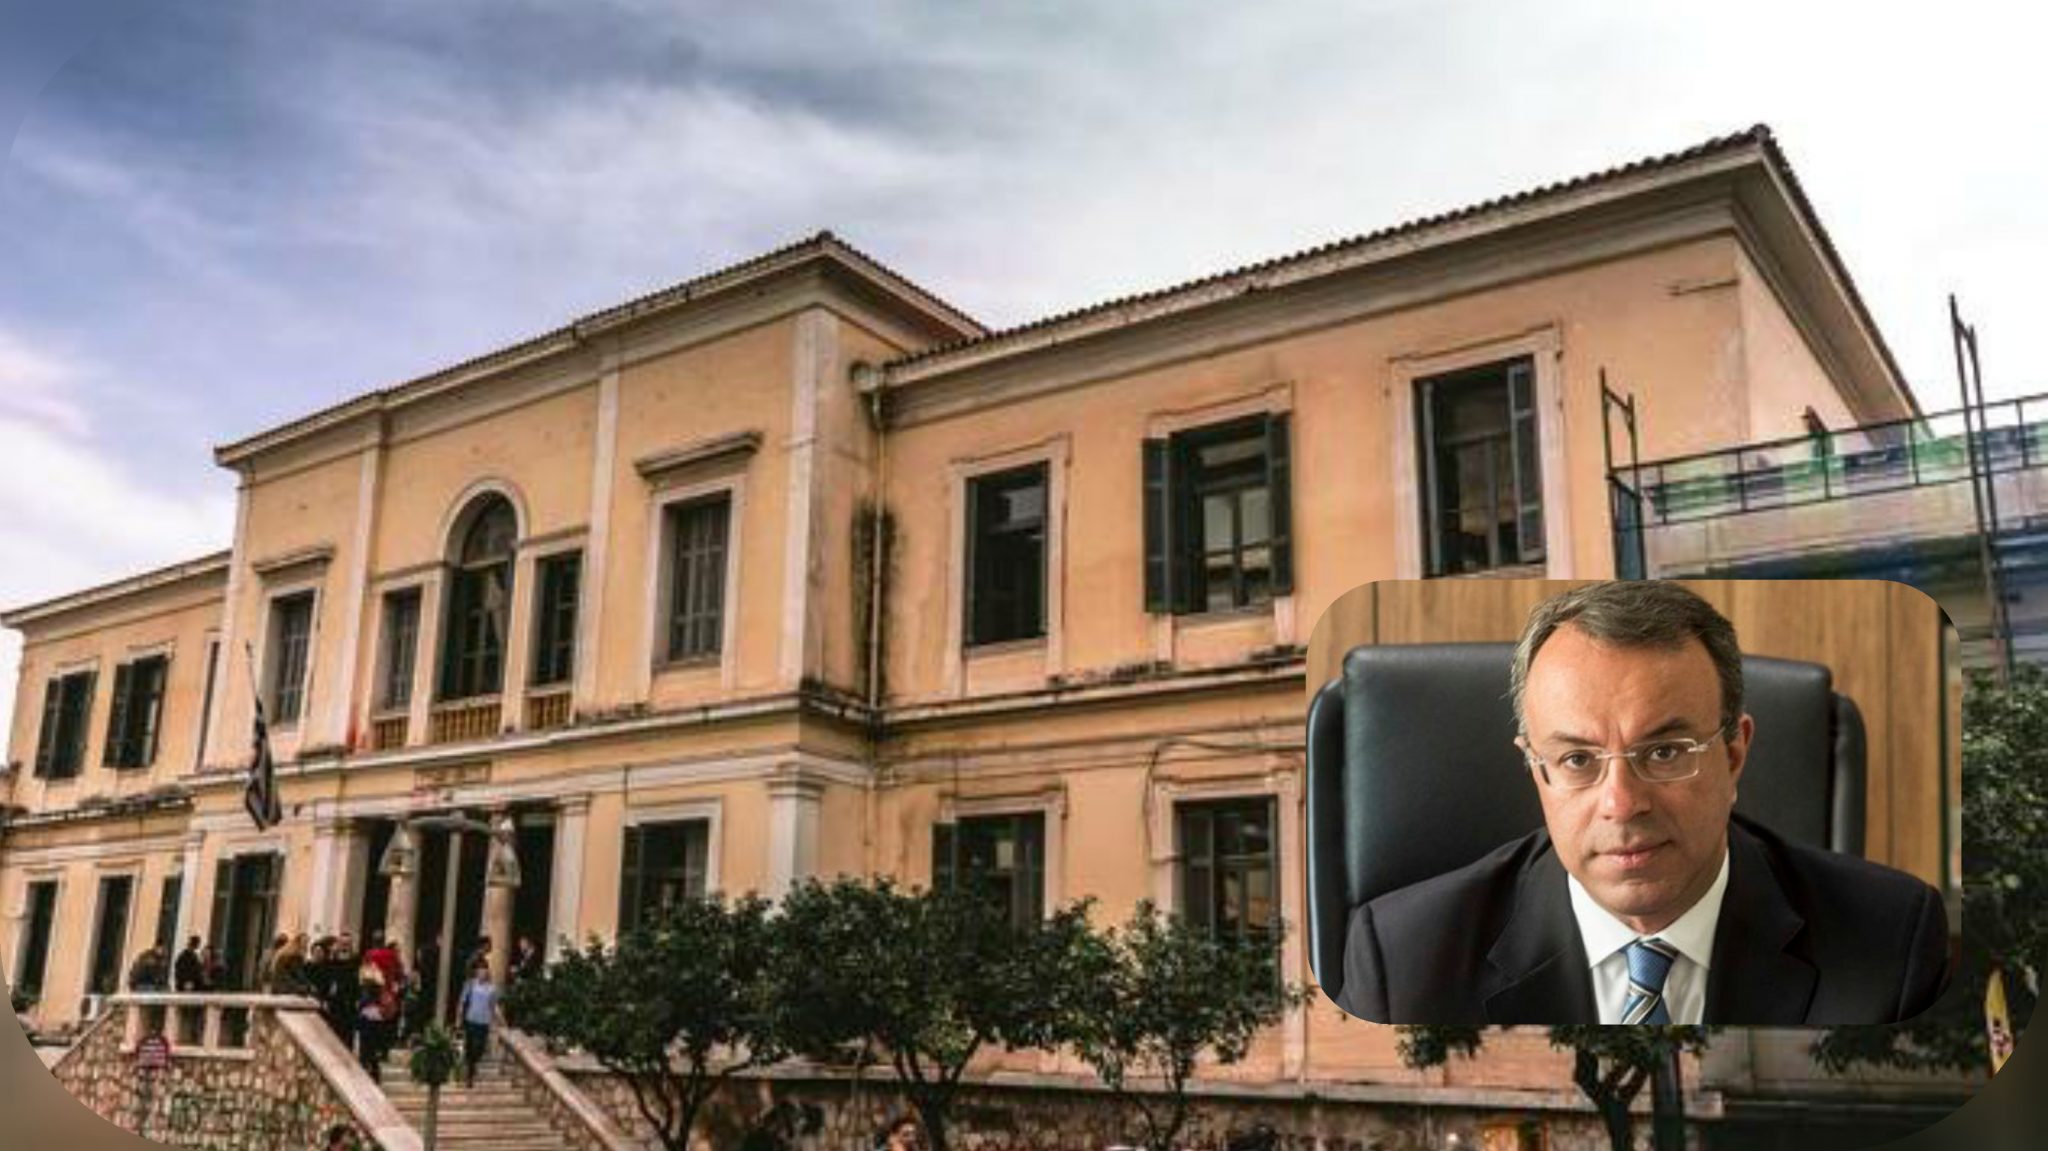 Λαμία: Προχωρά η επαναχωροθέτηση για το νέο Δικαστικό Μέγαρο στο "Τσαλτάκη"  - Οι ενέργειες που έχουν γίνει | Lamianow.gr